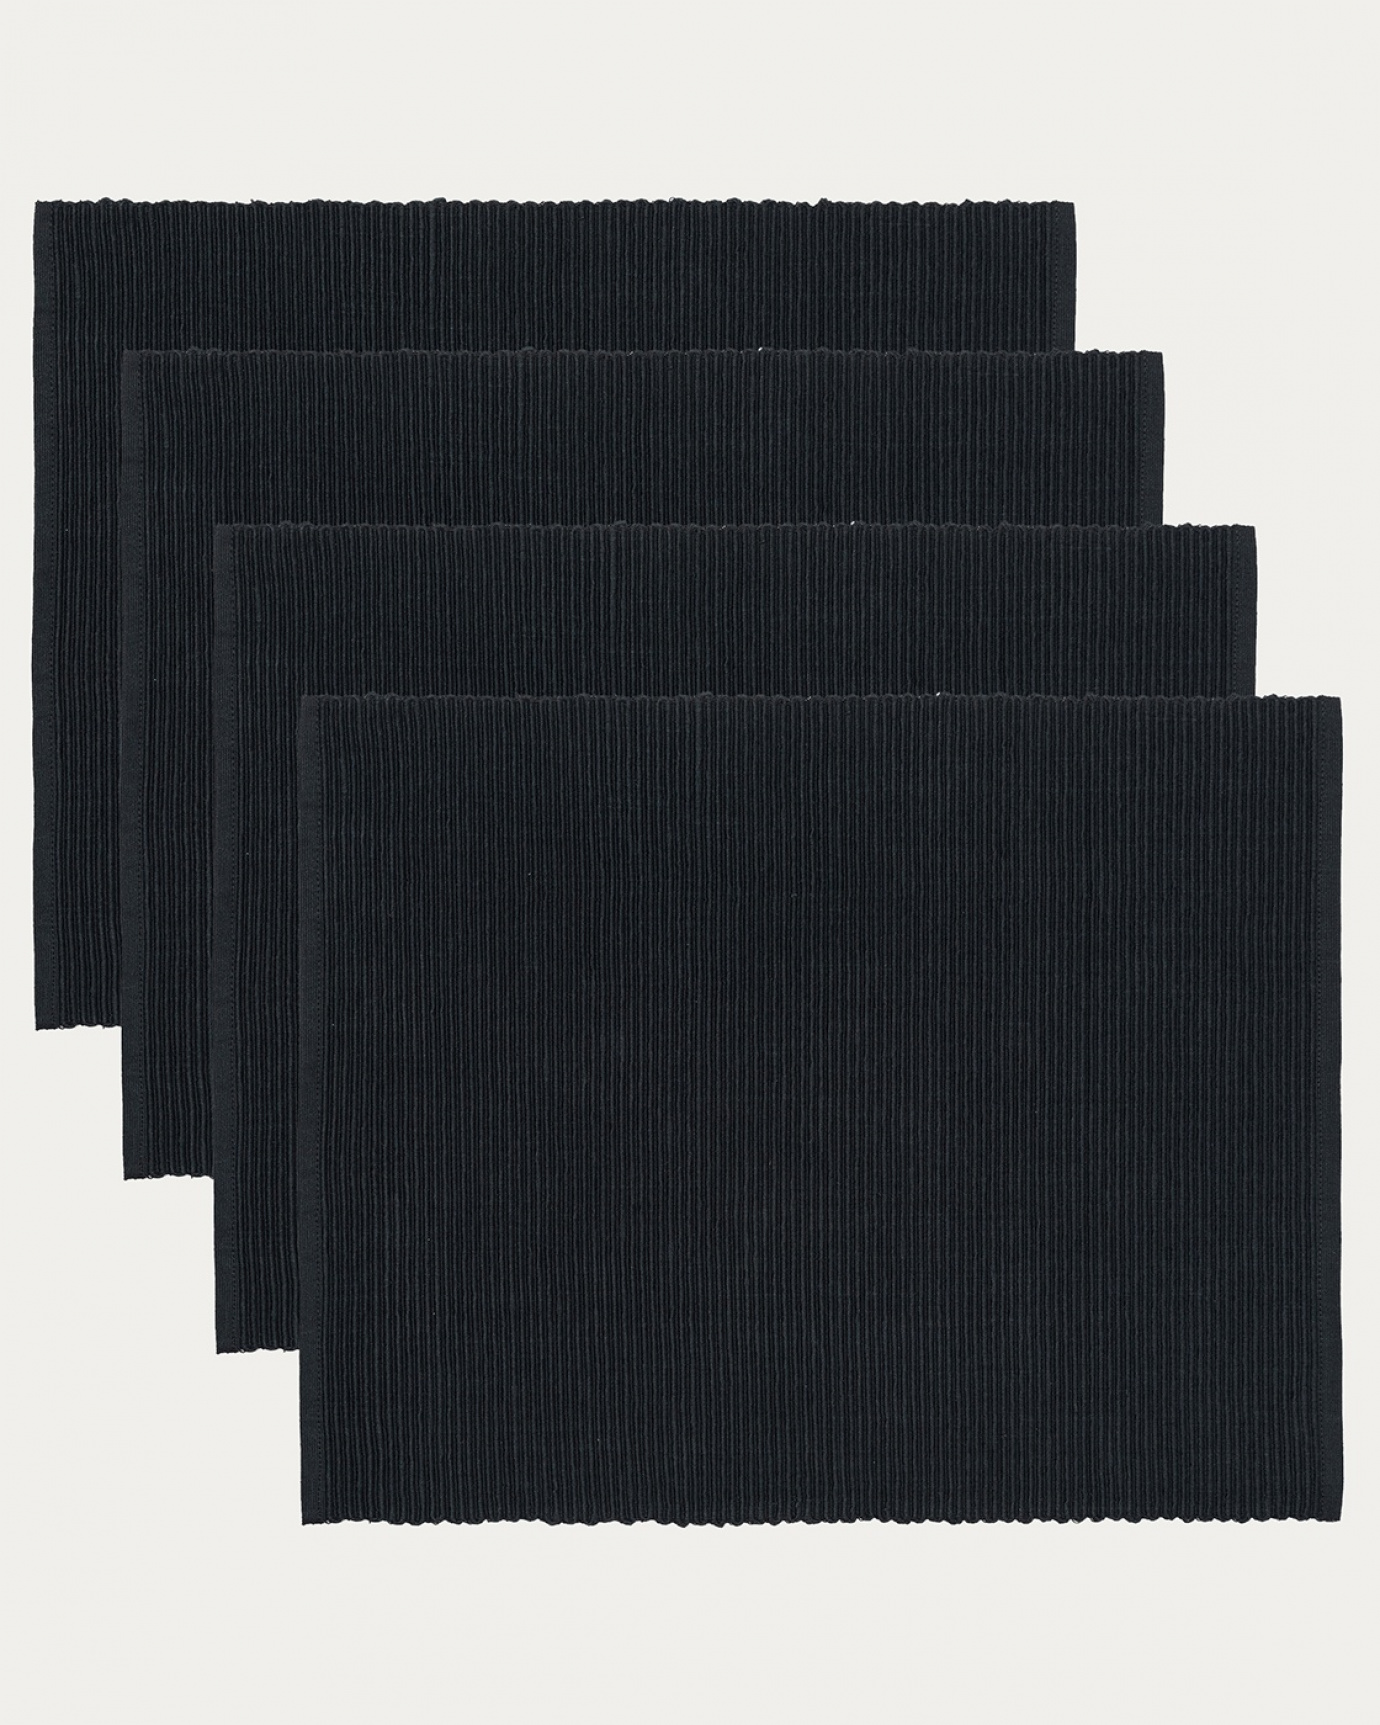 Produktbild svart UNI bordstablett av mjuk bomull i ribbad kvalité från LINUM DESIGN. Storlek 35x46 cm och säljs i 4-pack.